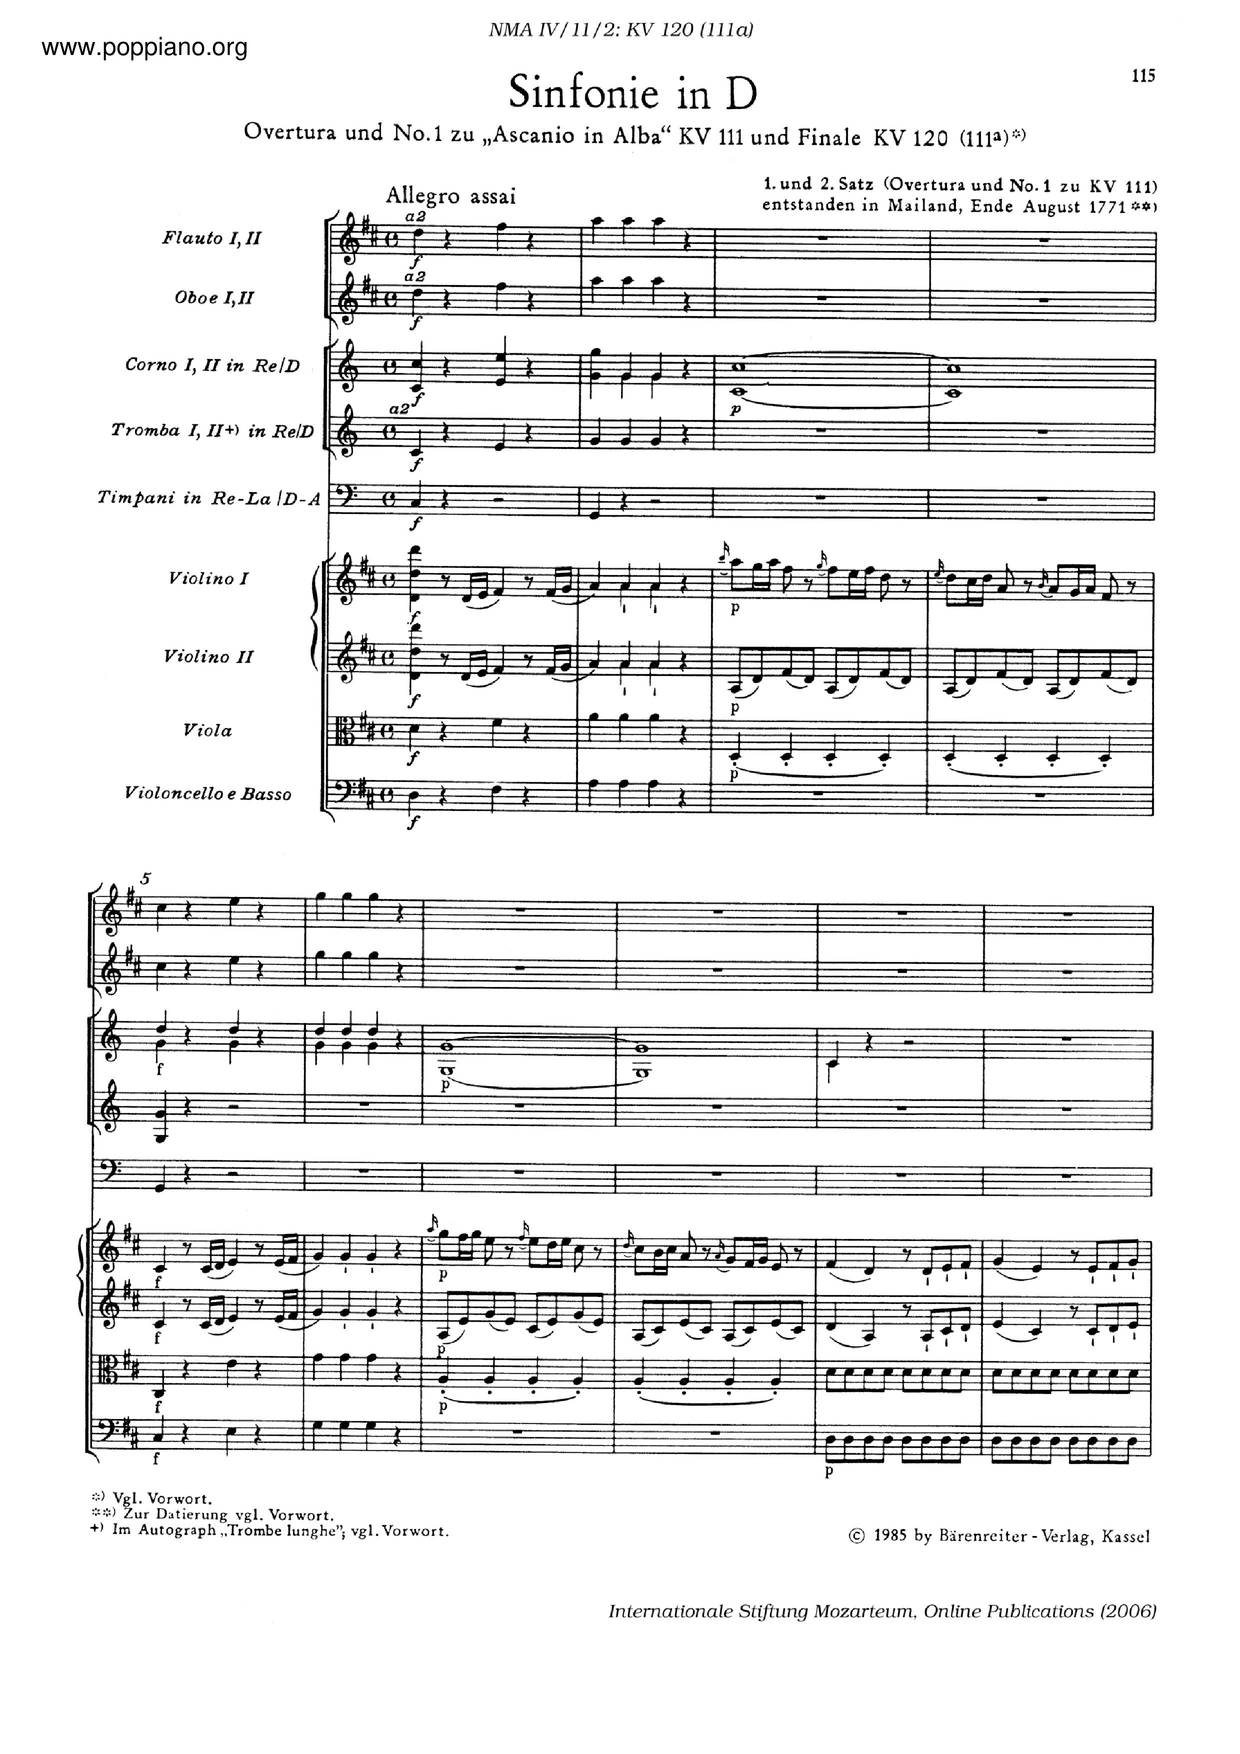 Symphony No. 48 In D Major, K. 120/111A Score